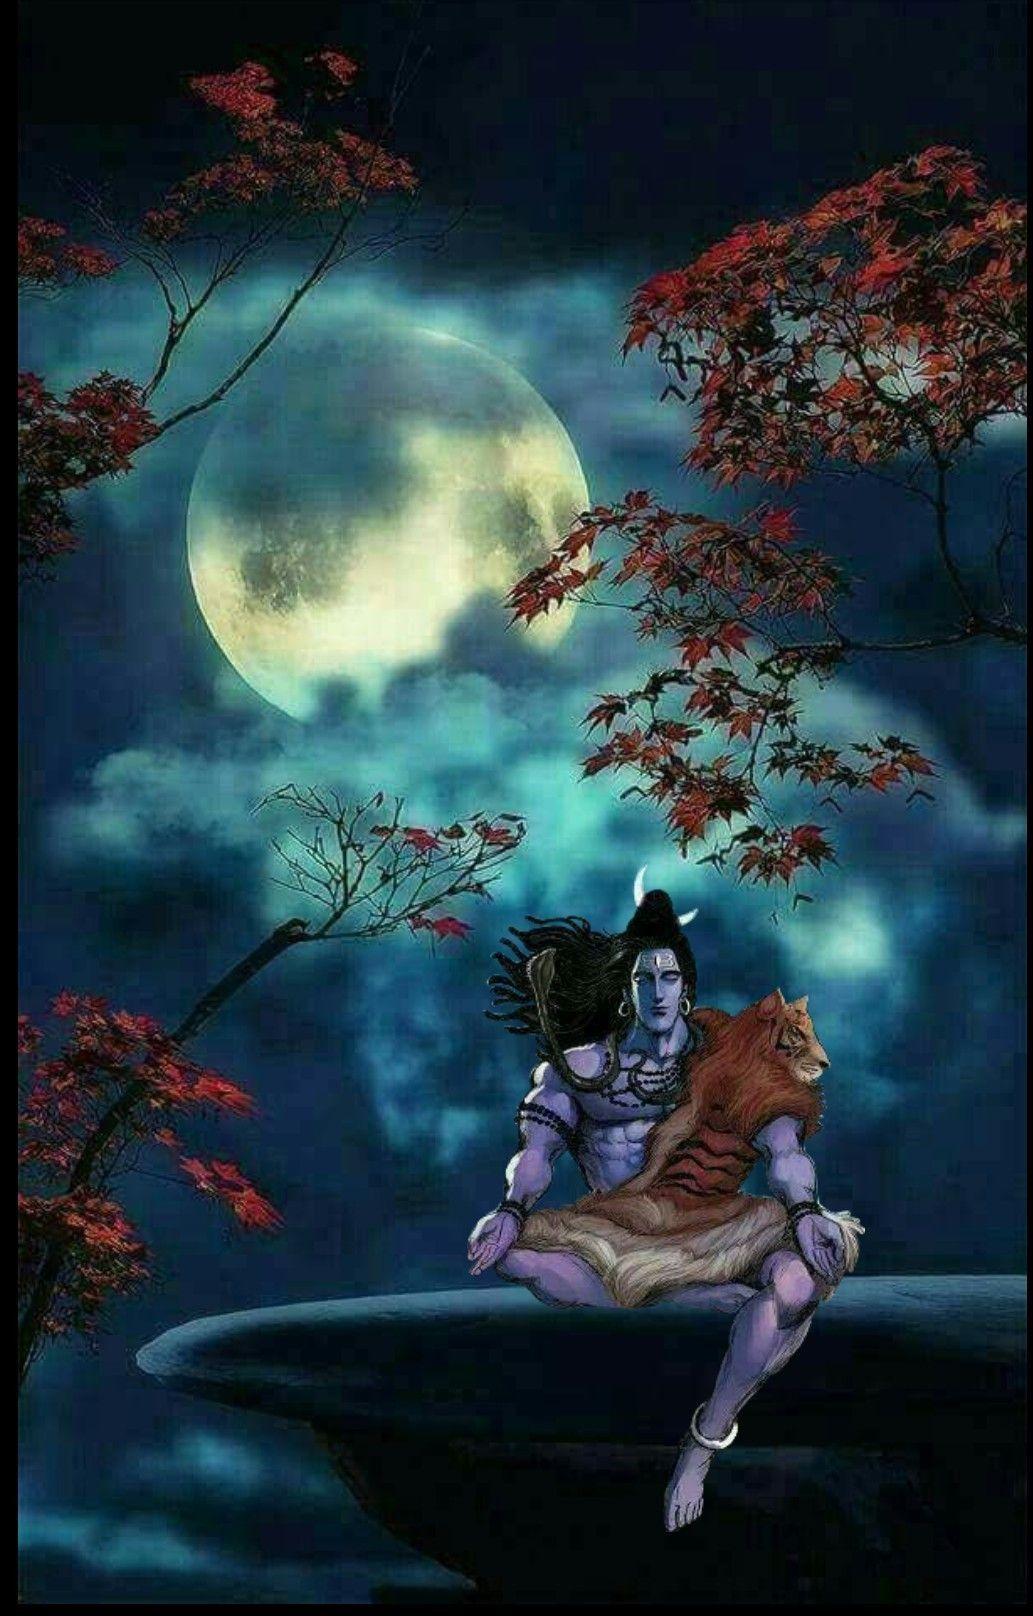 1033x1616 Chúa Shiva trong vai adiyogi trong bức tranh nghệ thuật sáng tạo.  Rudra shiva